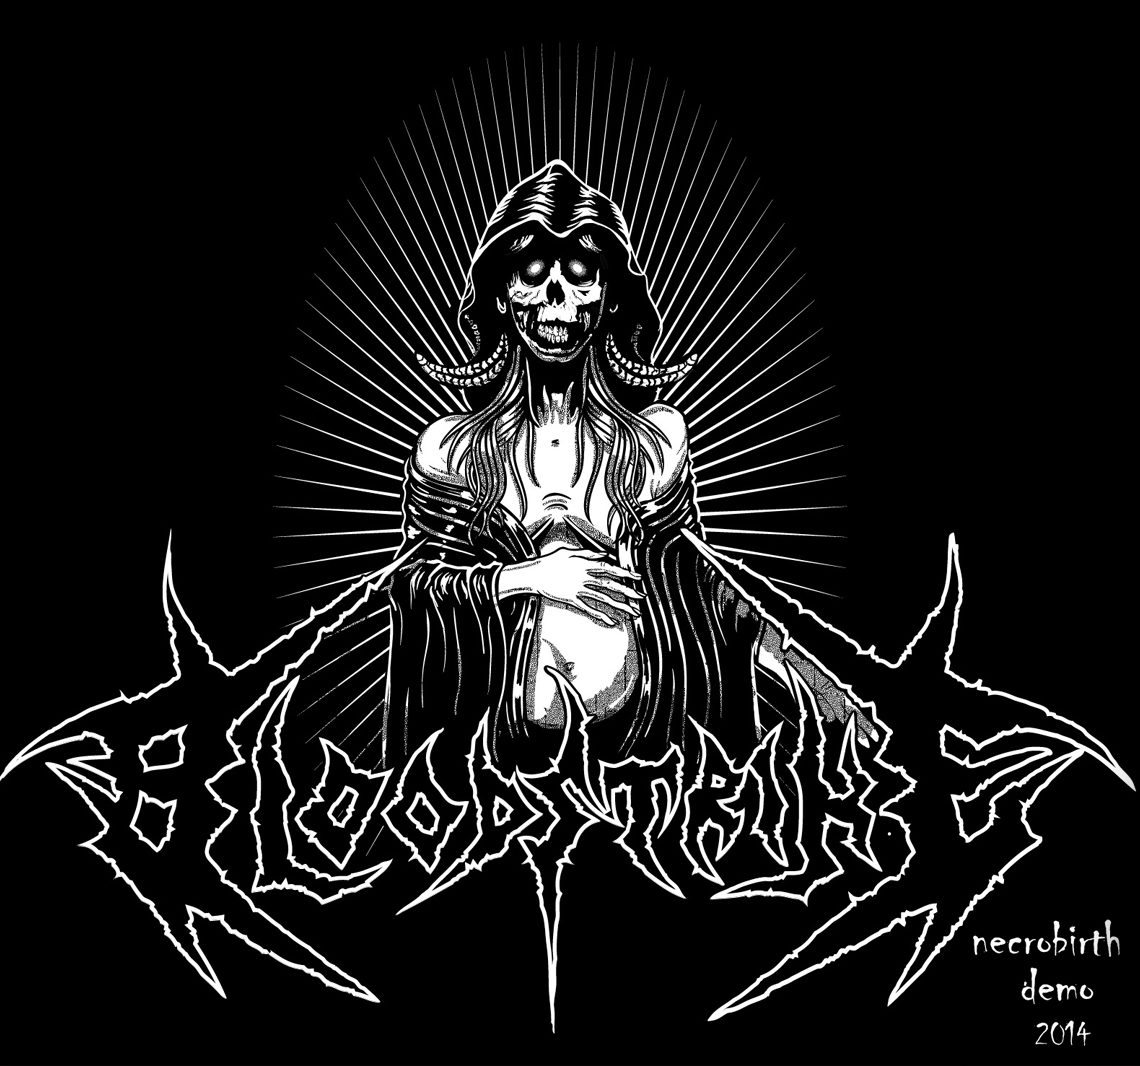 Bloodstrike – Necrobirth (demo)